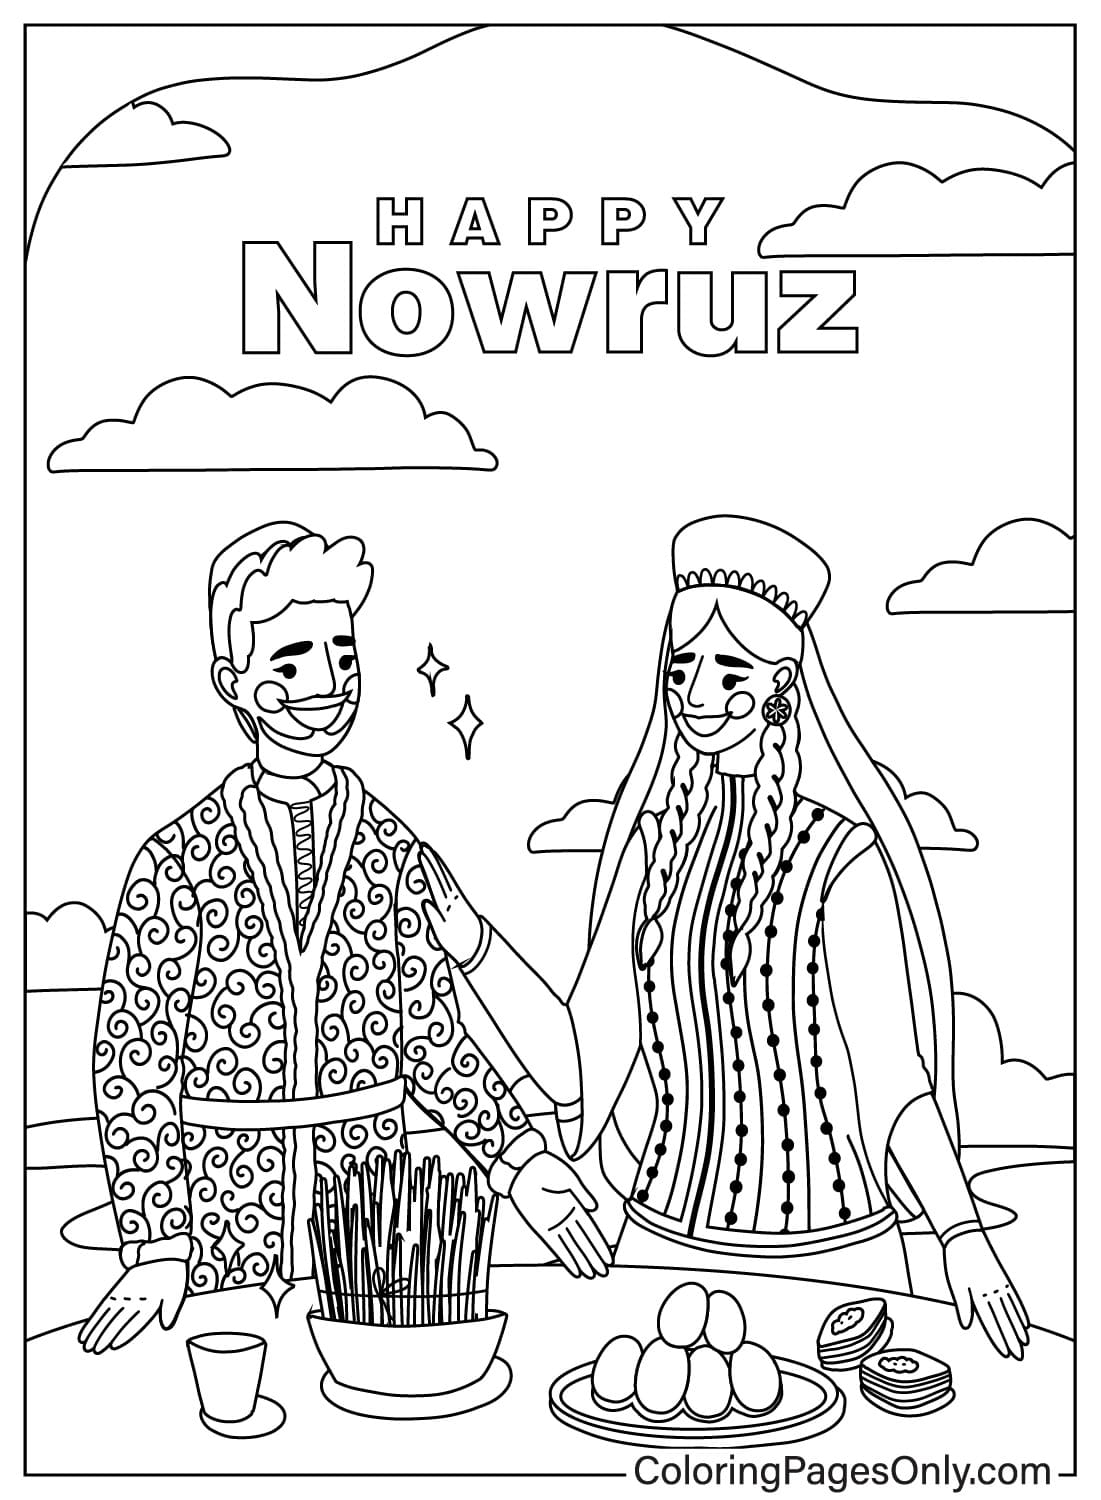 Getekende Happy Nowruz-kleurplaat van Internationale Nowruz-dag